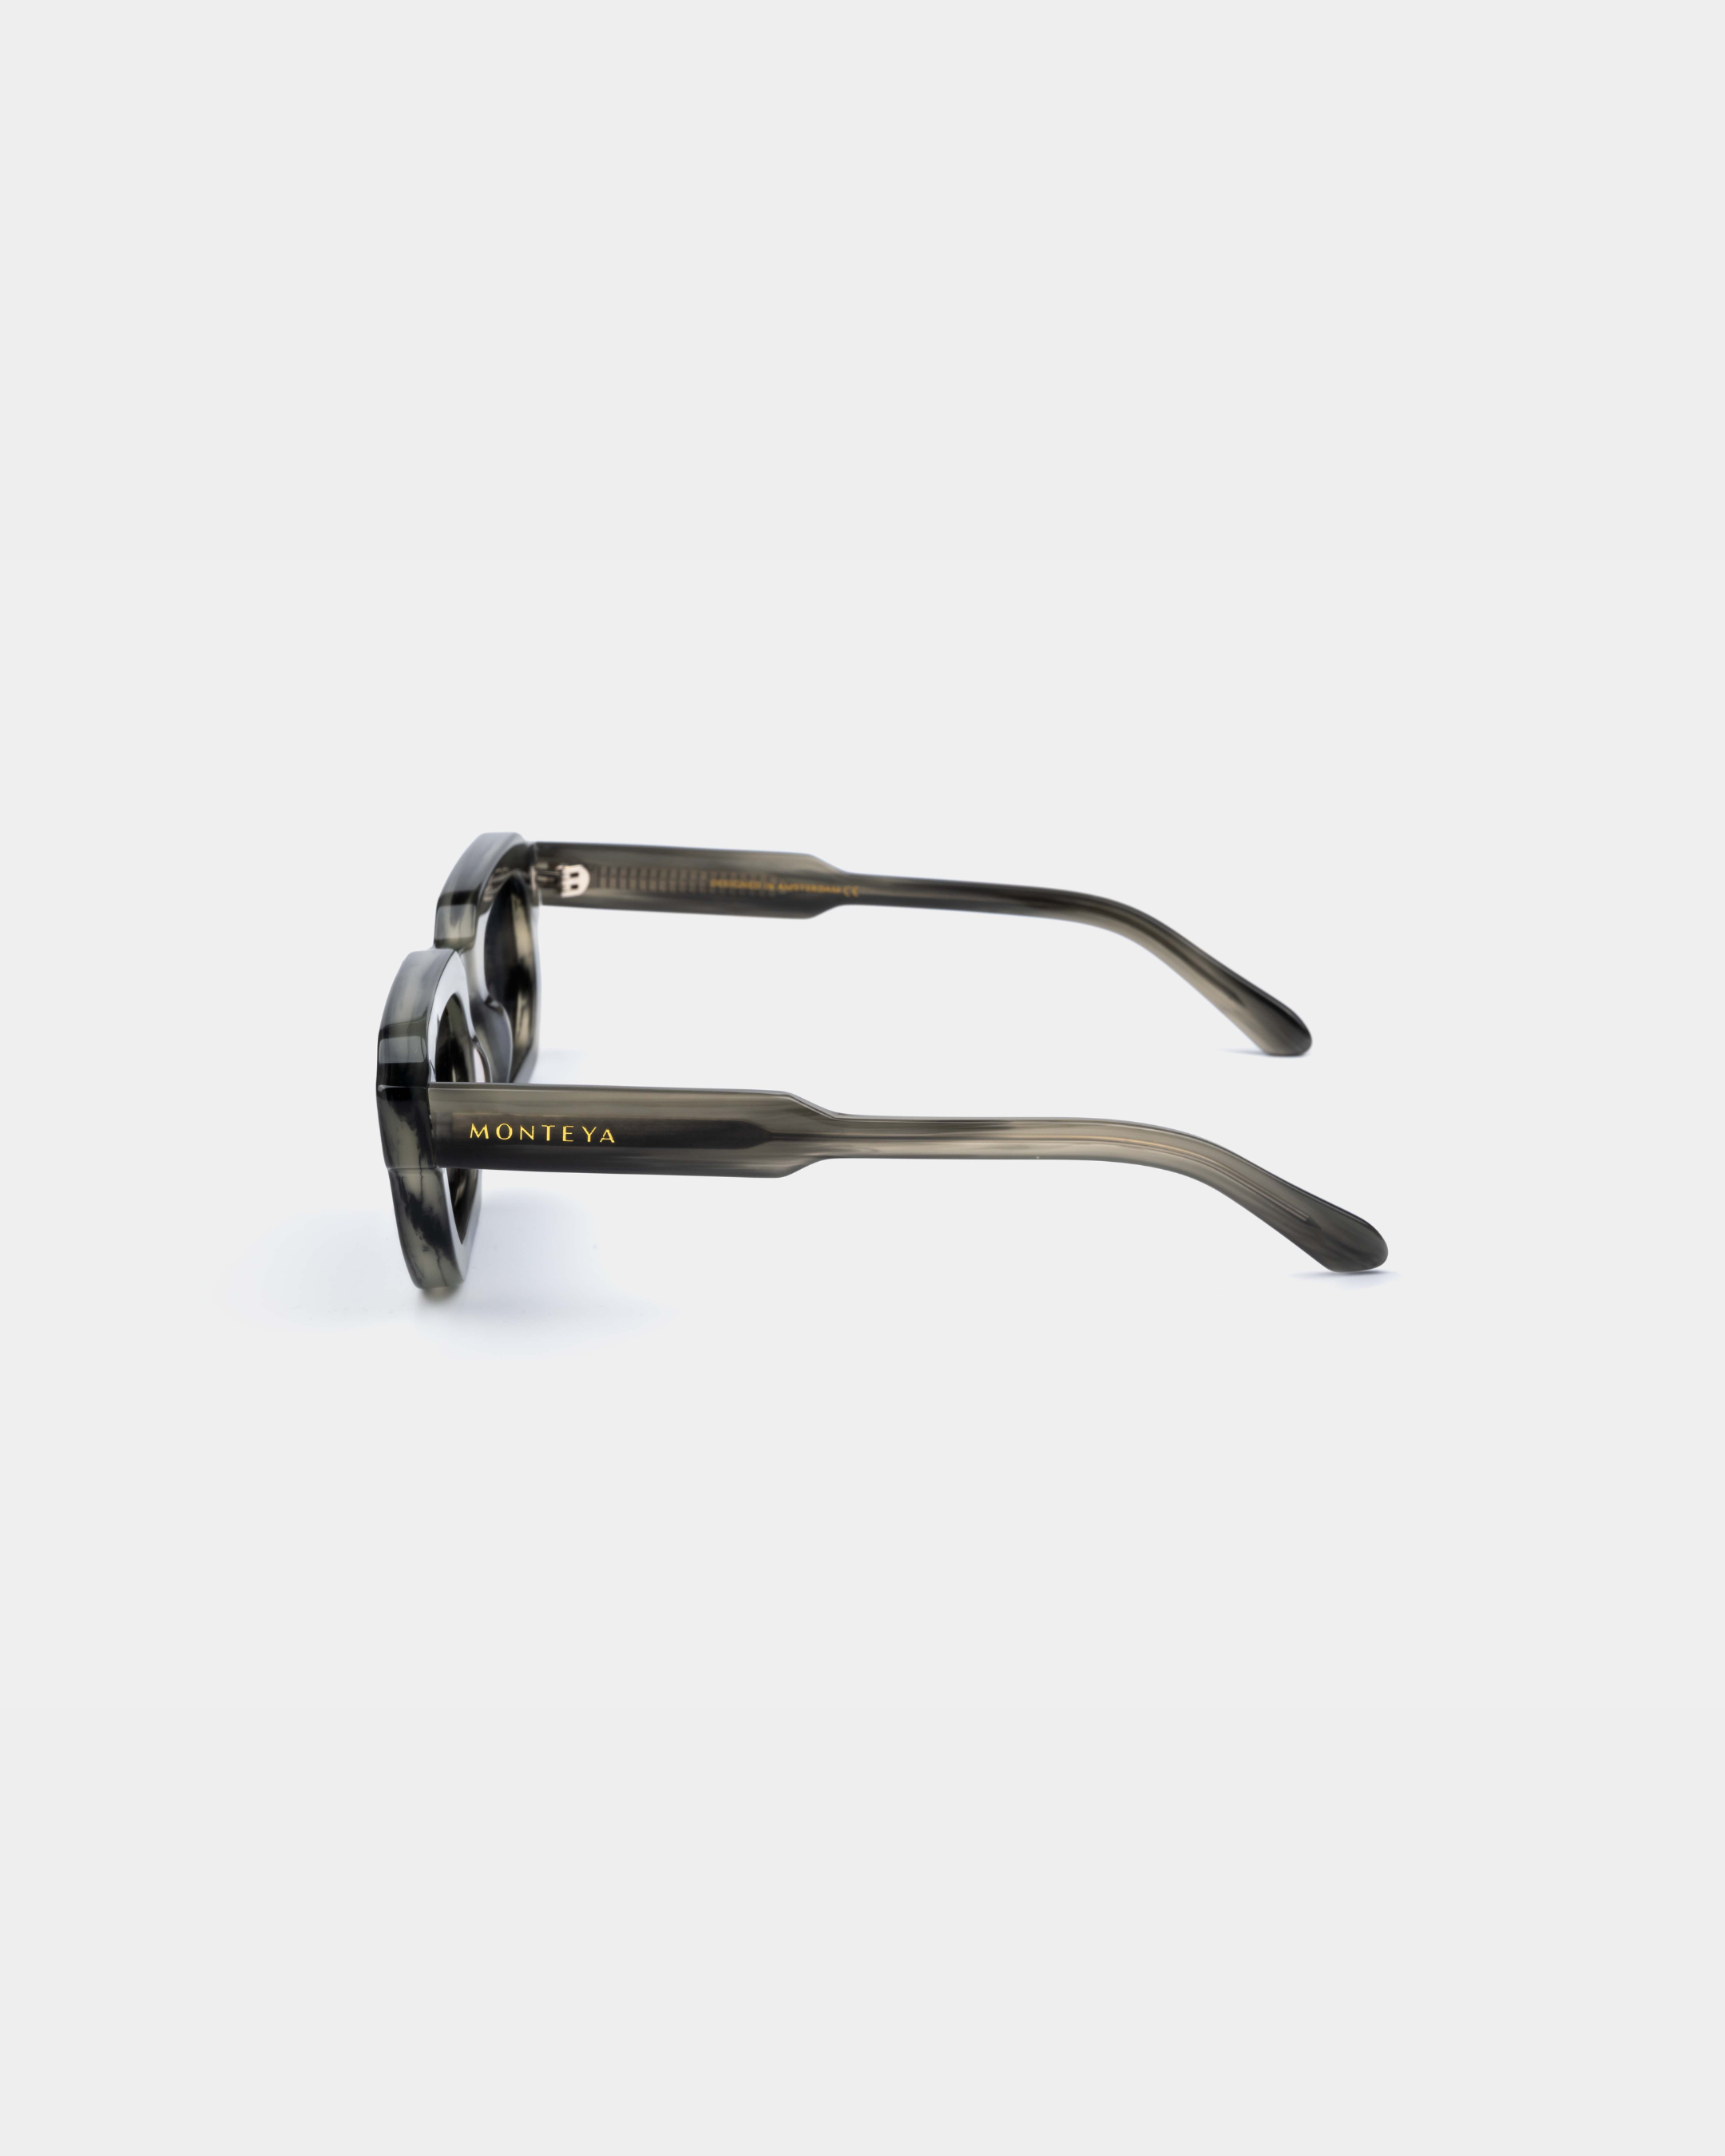 MONTEYA Urban - Charcoal - Acetate Frame - TAC Polarized Lenses - High End Eyewear - 03